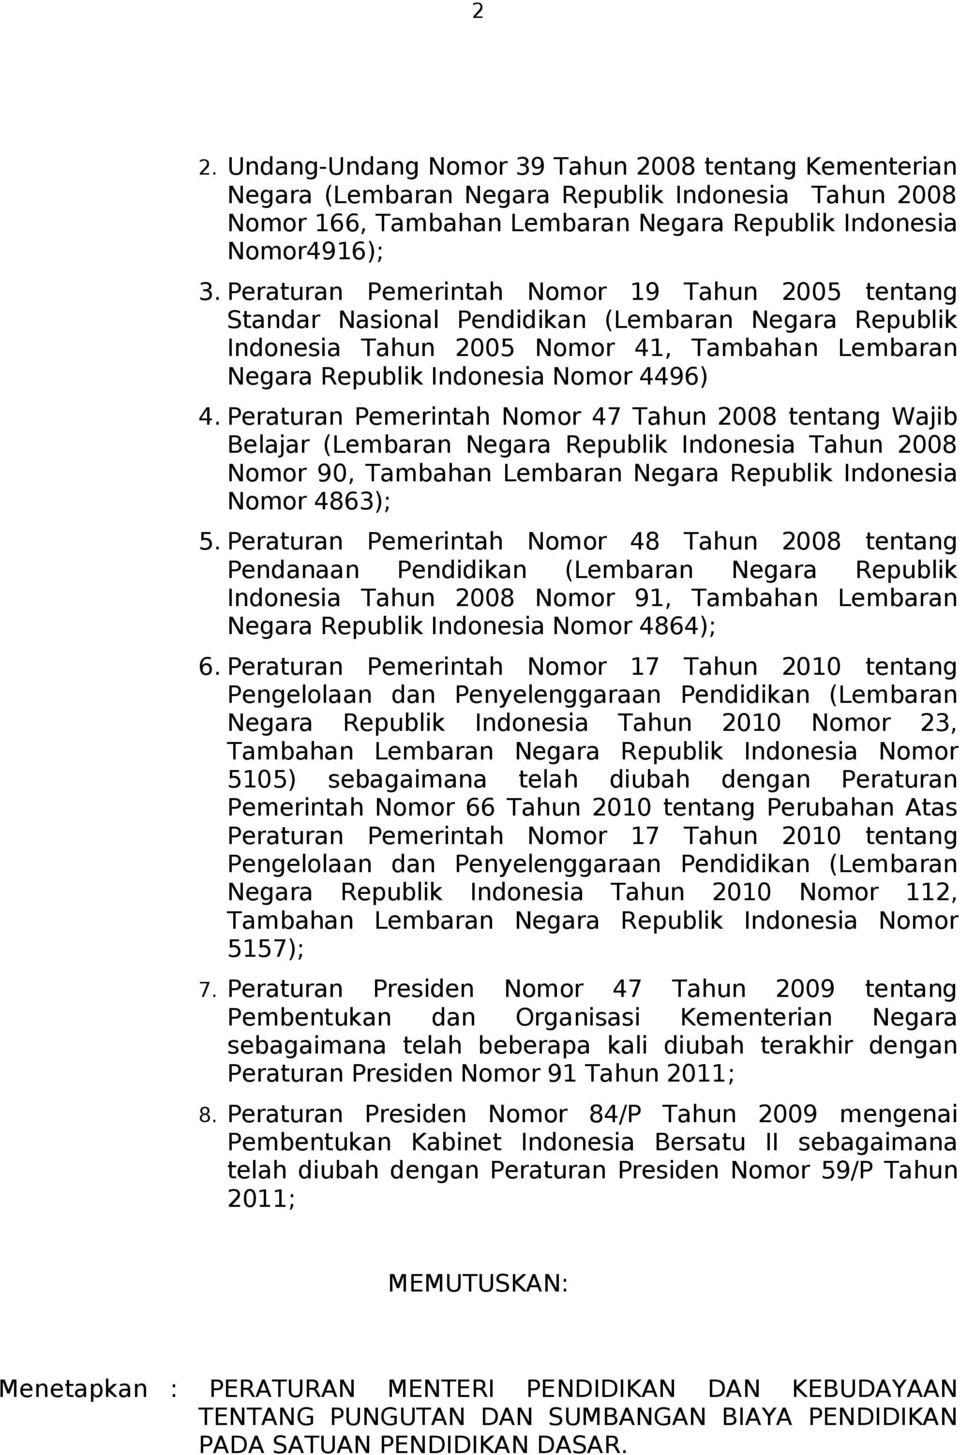 Peraturan Pemerintah Nomor 47 Tahun 2008 tentang Wajib Belajar (Lembaran Negara Republik Indonesia Tahun 2008 Nomor 90, Tambahan Lembaran Negara Republik Indonesia Nomor 4863); 5.